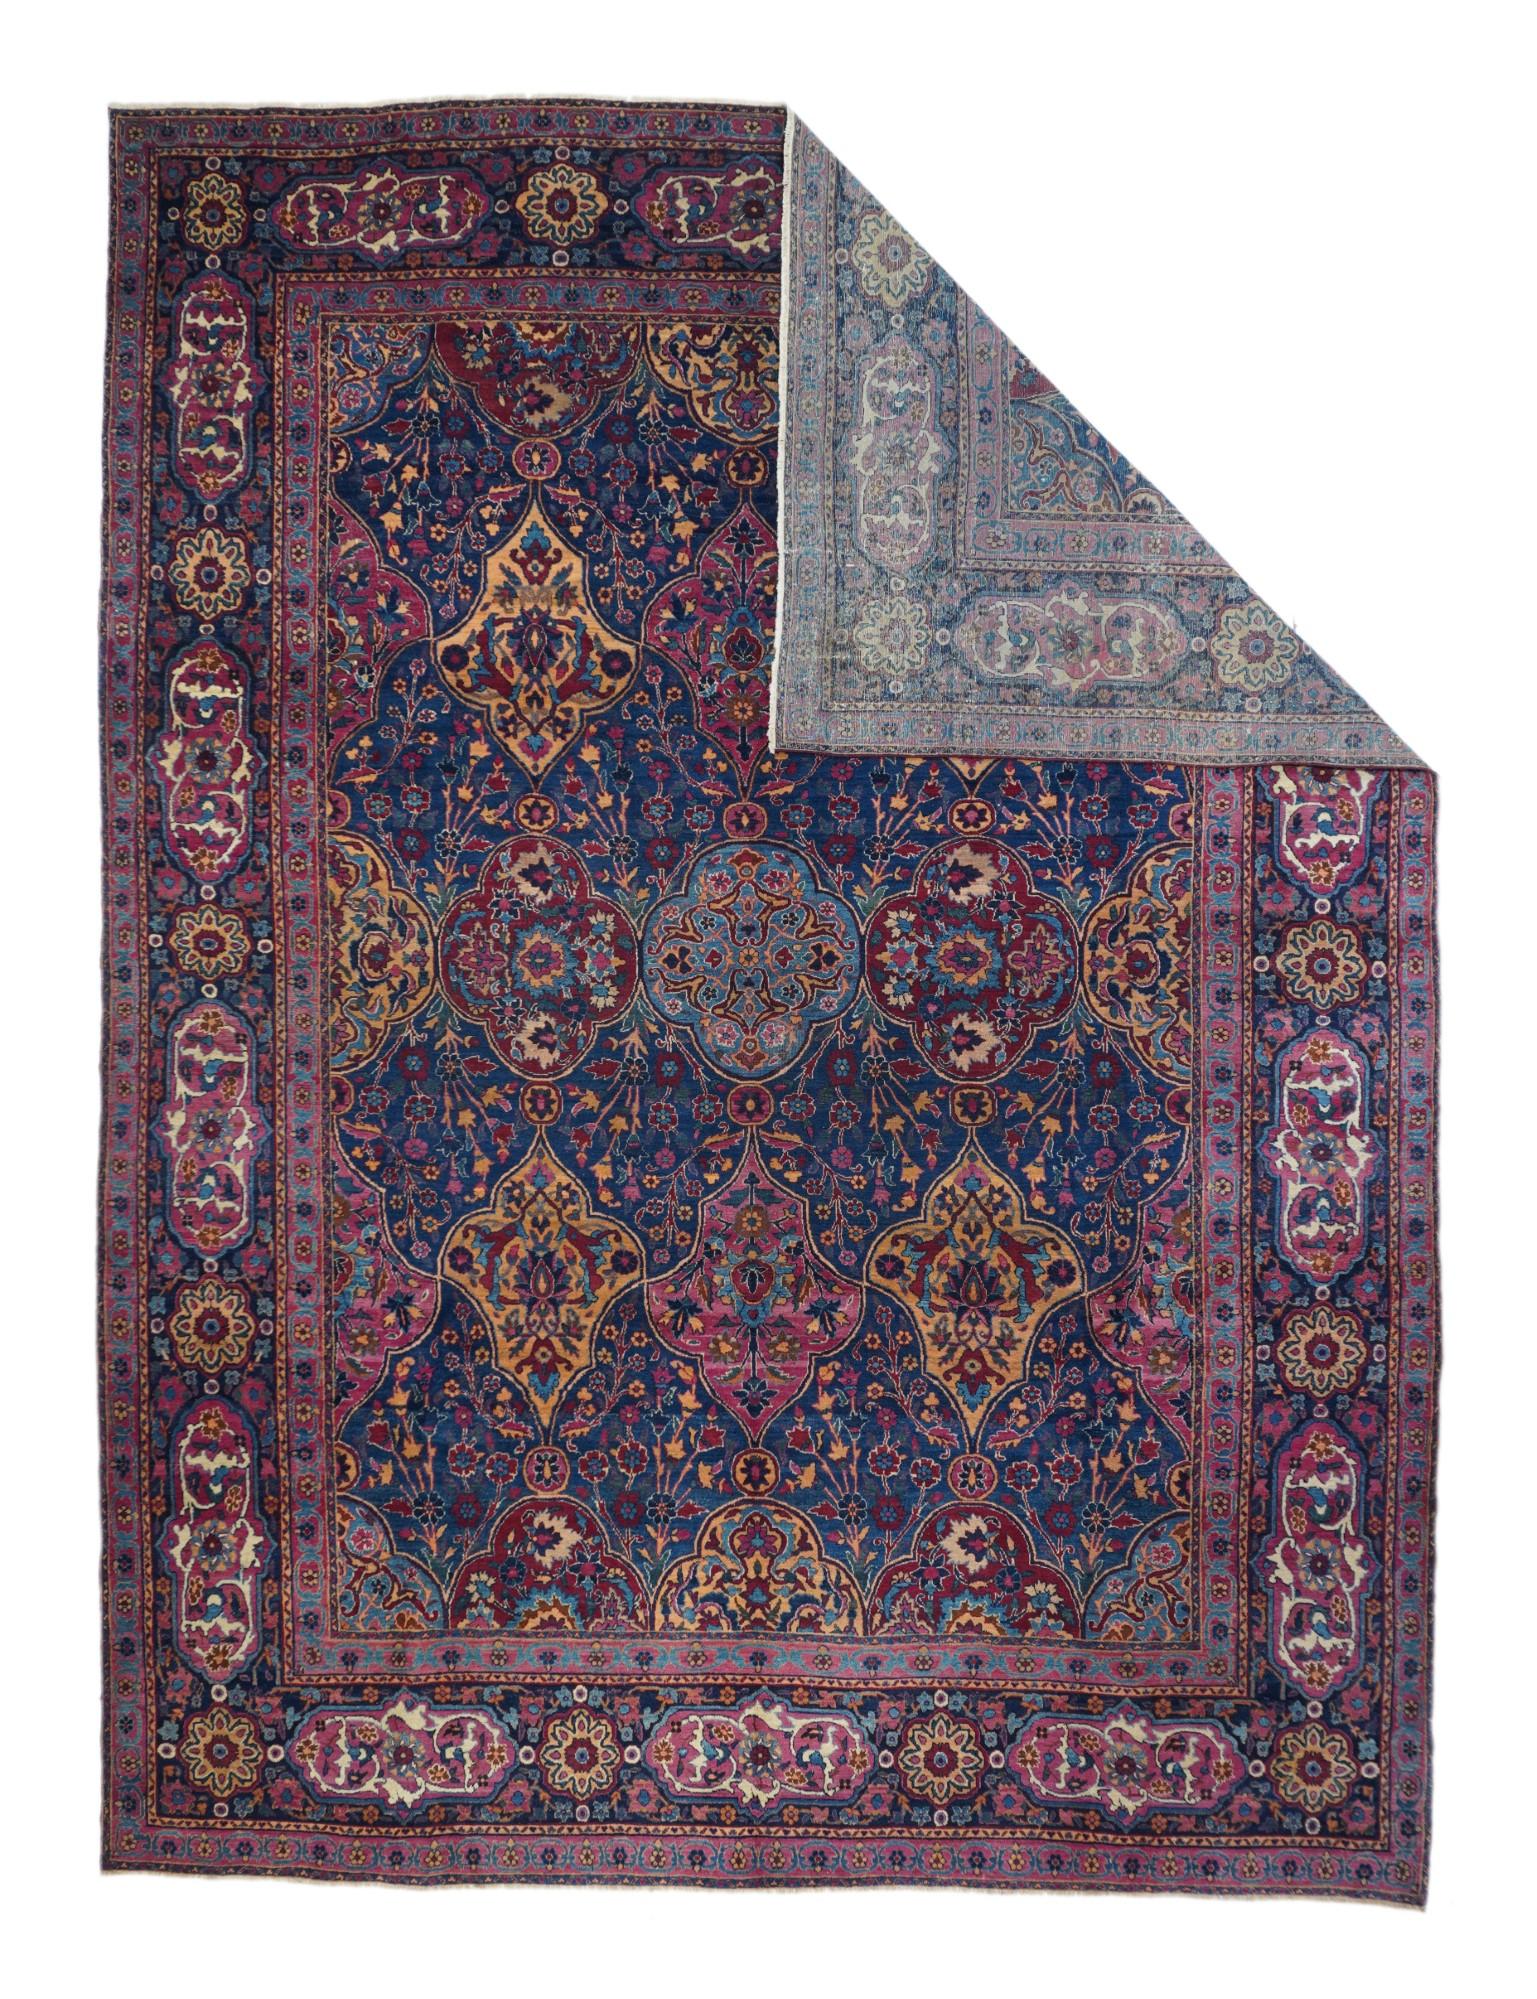 Ce tapis de ville persan du sud-est des années 1920 présente un champ bleu royal à motifs de quadrilobes et de cartouches de boucliers en bleu clair, paille, sarcelle et rouge vin. Une variété de tiges fleuries remplit les réserves tandis que des